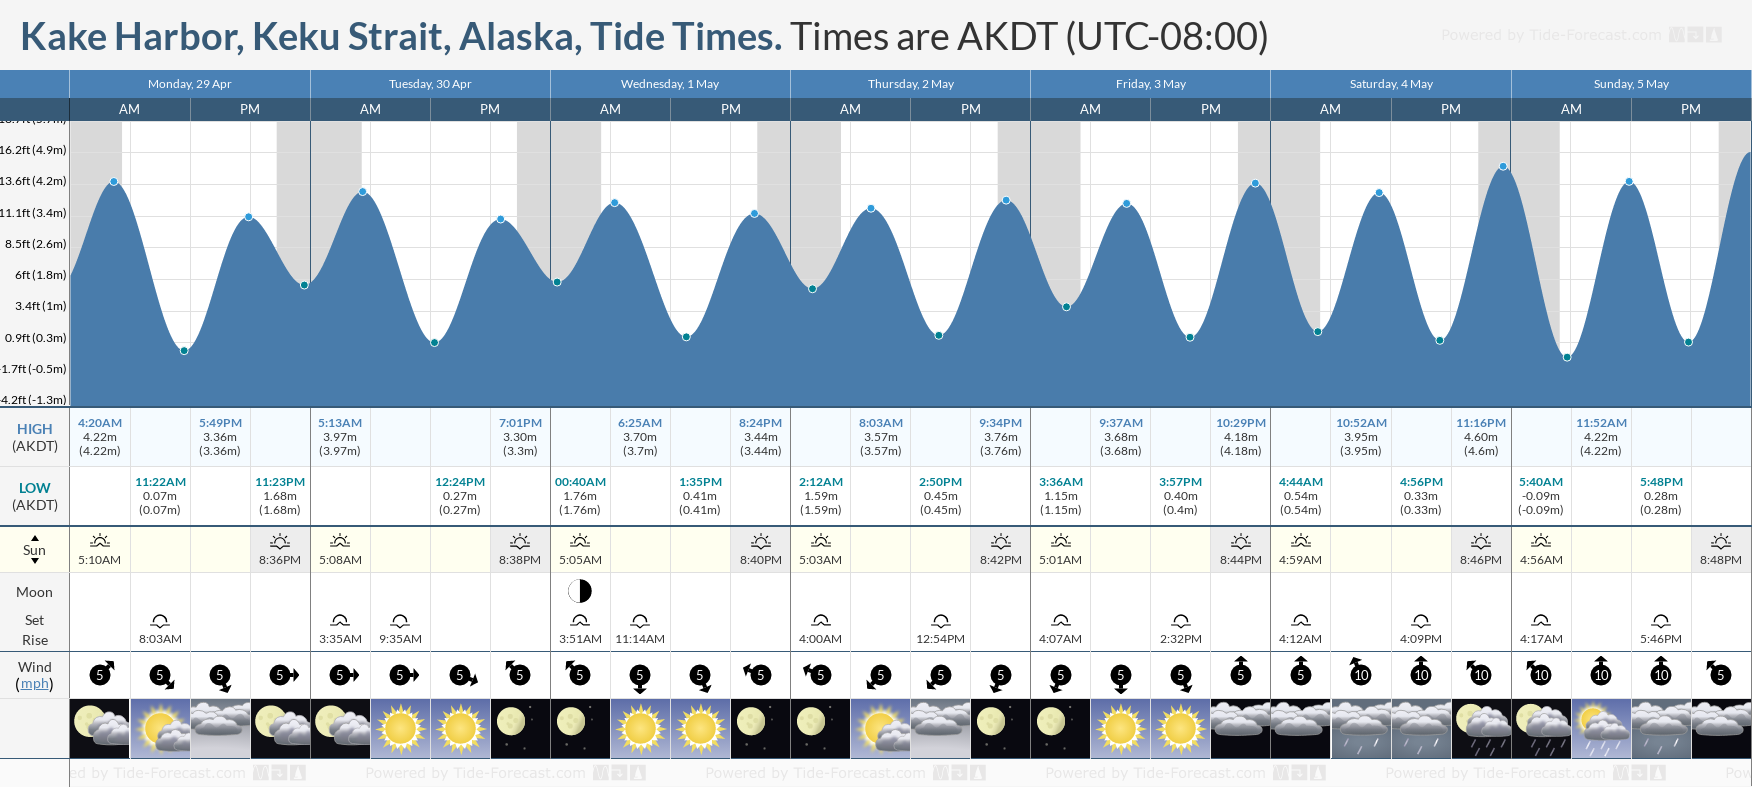 Kake Harbor, Keku Strait, Alaska Tide Chart including high and low tide tide times for the next 7 days